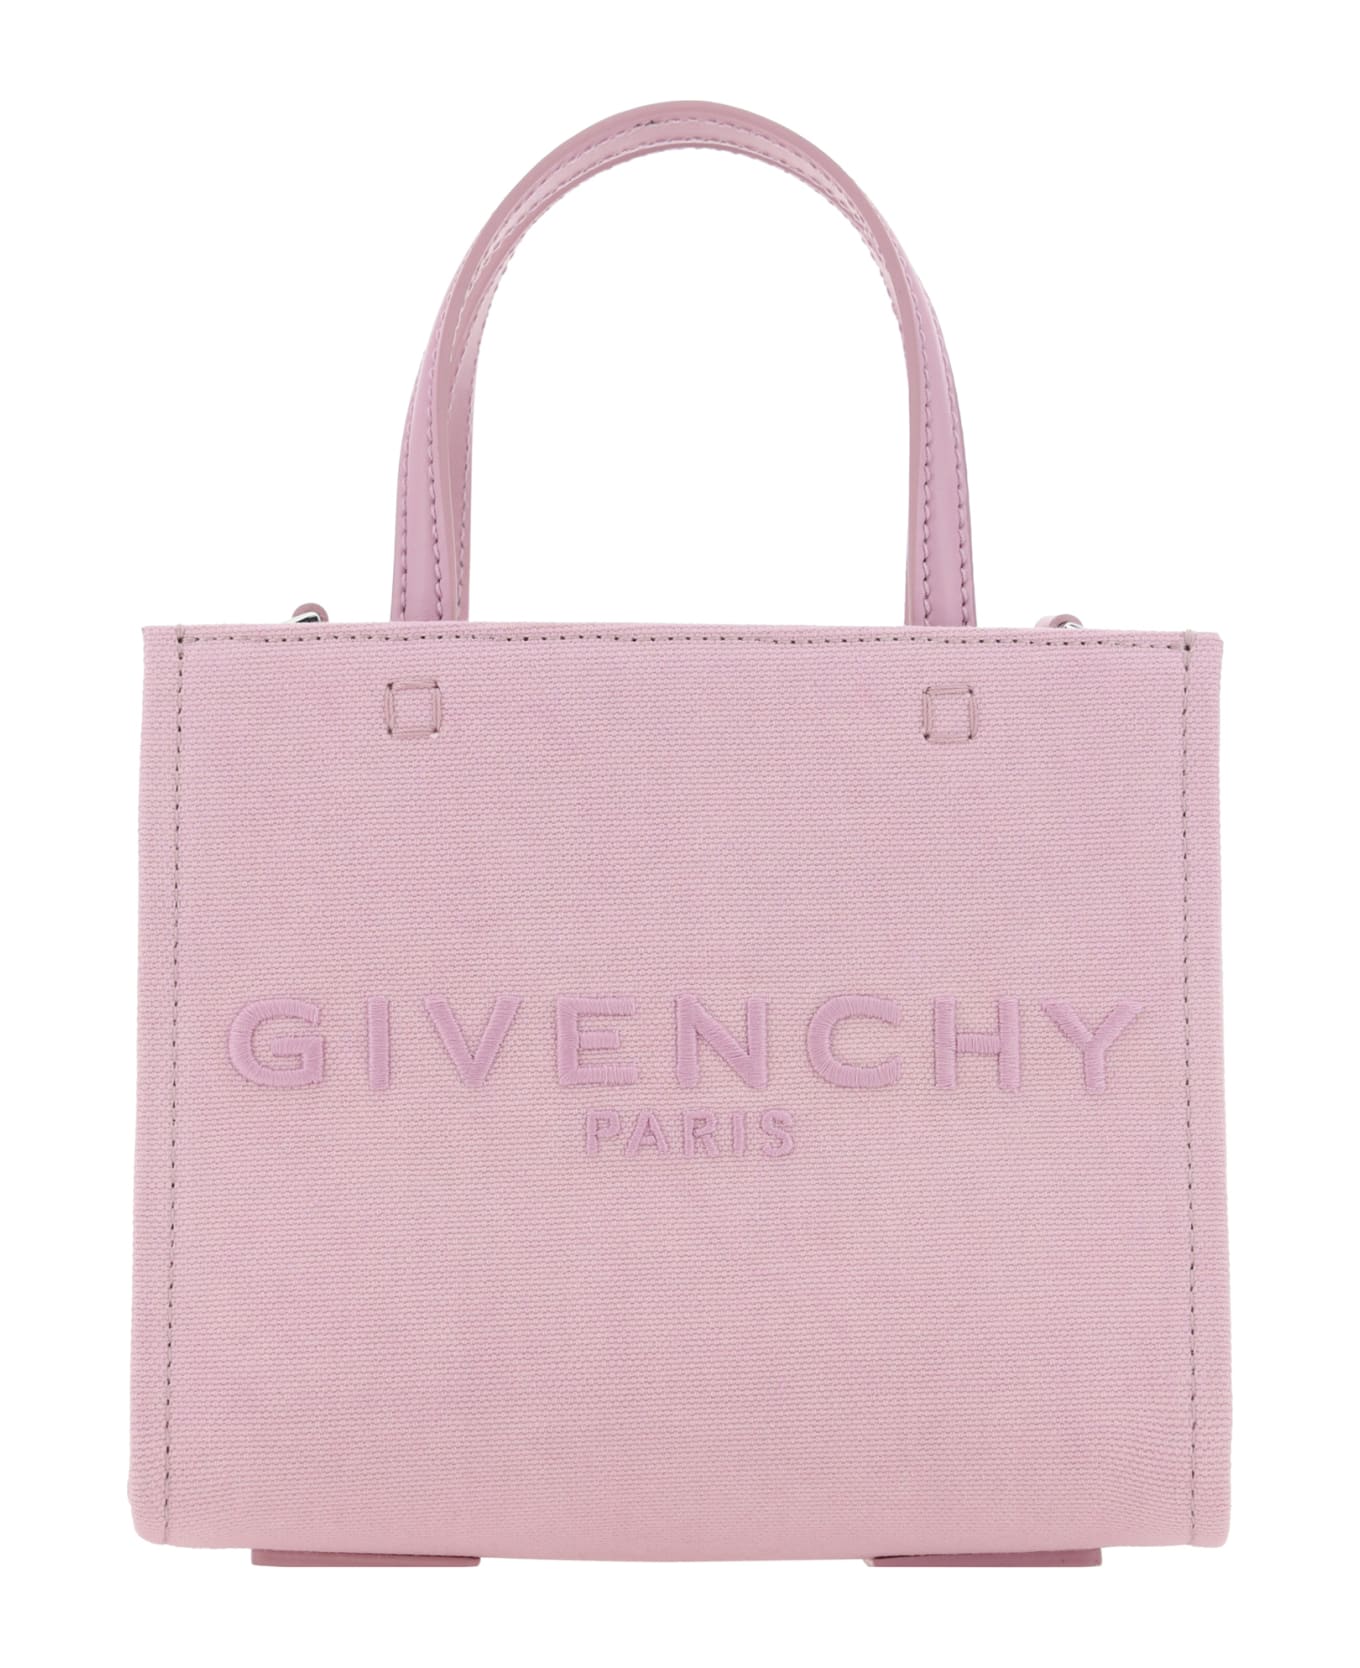 Givenchy Tote Mini Handbag - Pink